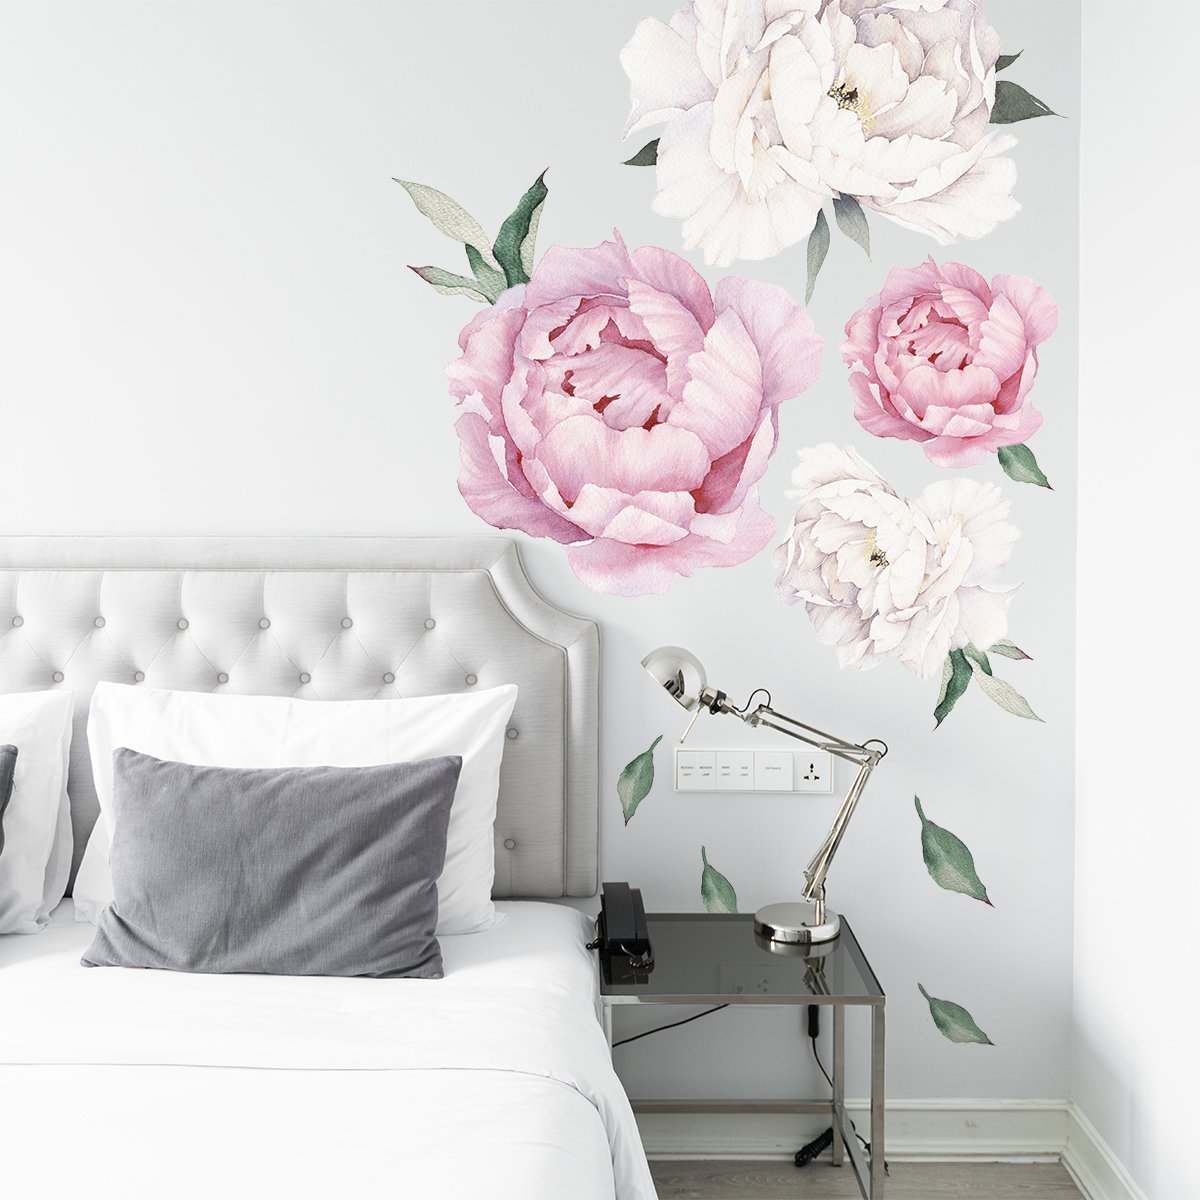 Naklejki na ścianę różowe i białe rośliny do sypialni#kolor_rozowy